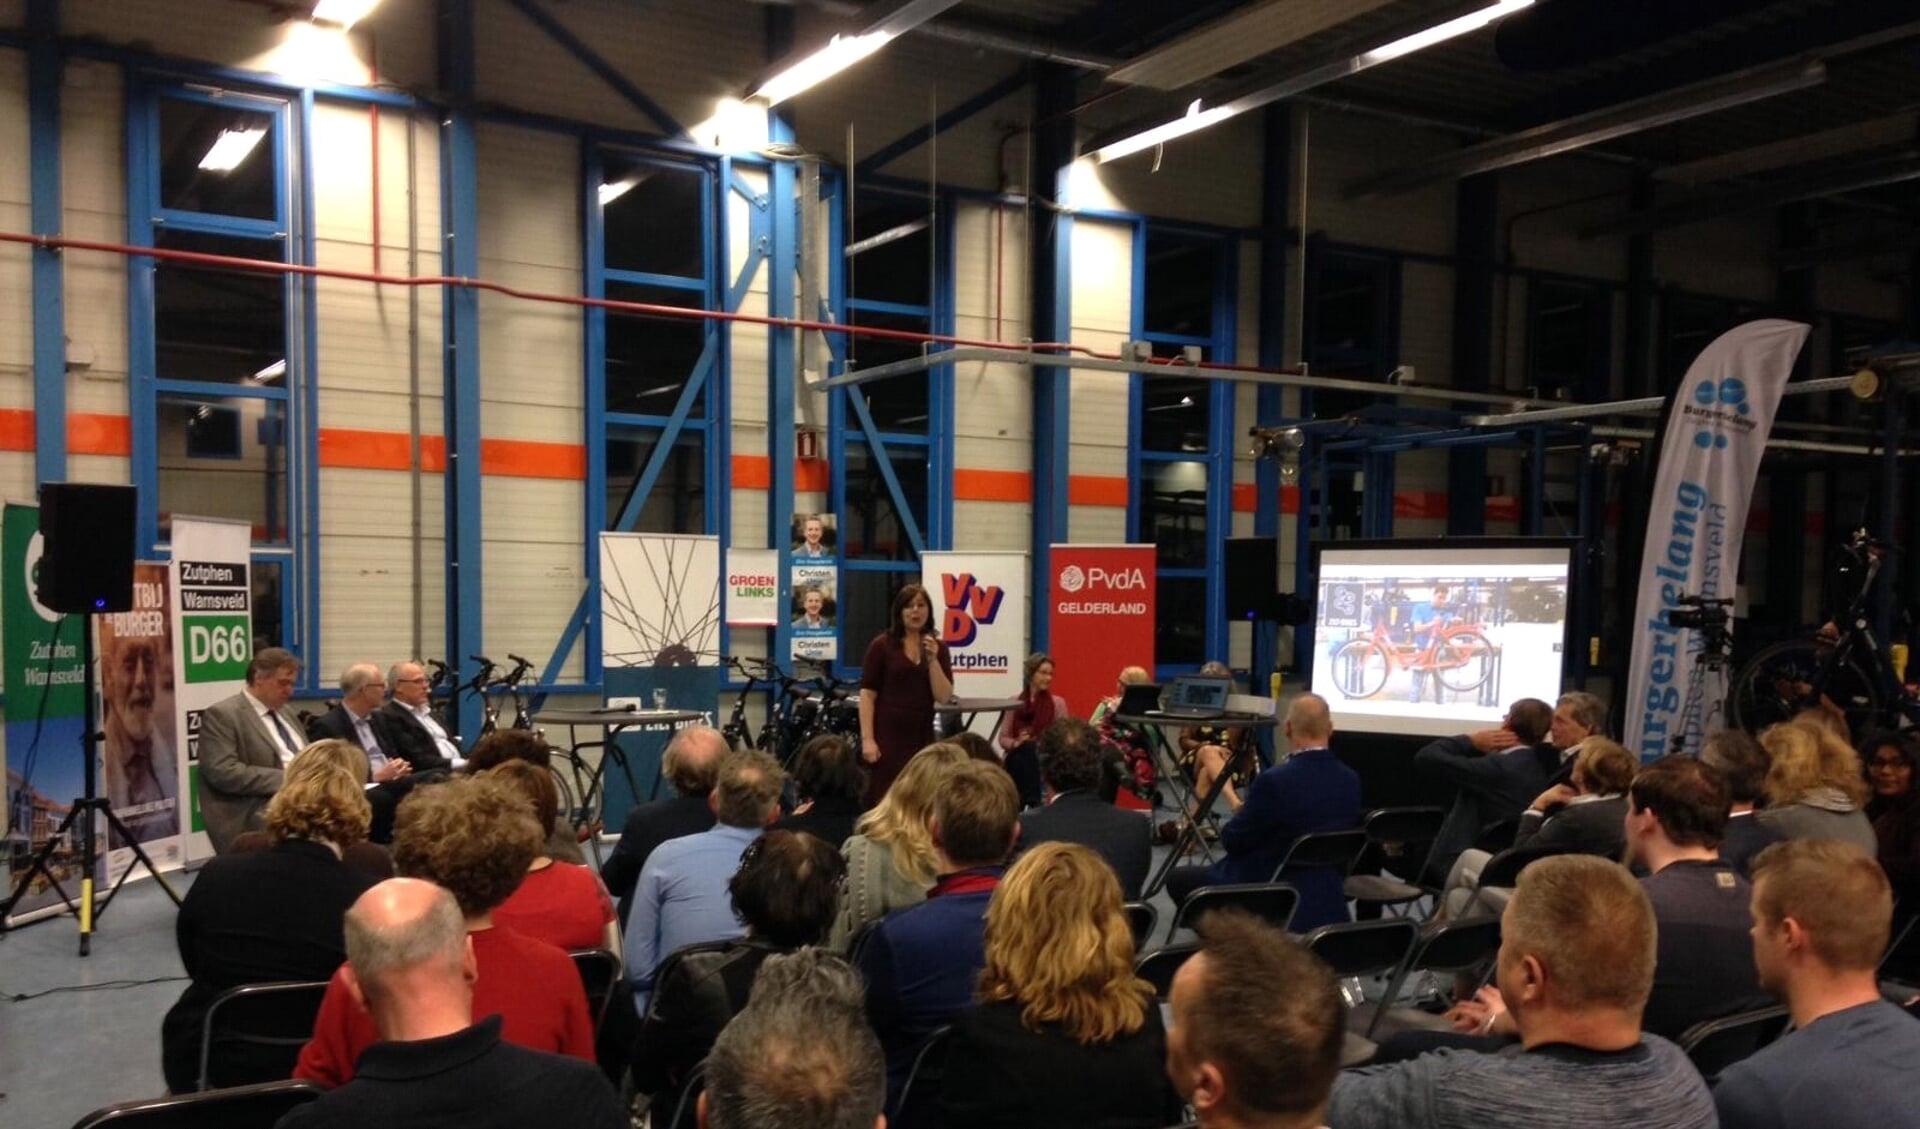 In de fabriekshal van ZILT Bikes in Zutphen hadden kandidaten voor de Provinciale Statenverkiezingen een debat over hoe het onderwijs beter kan aansluiten op de arbeidsmarkt. Foto: PR